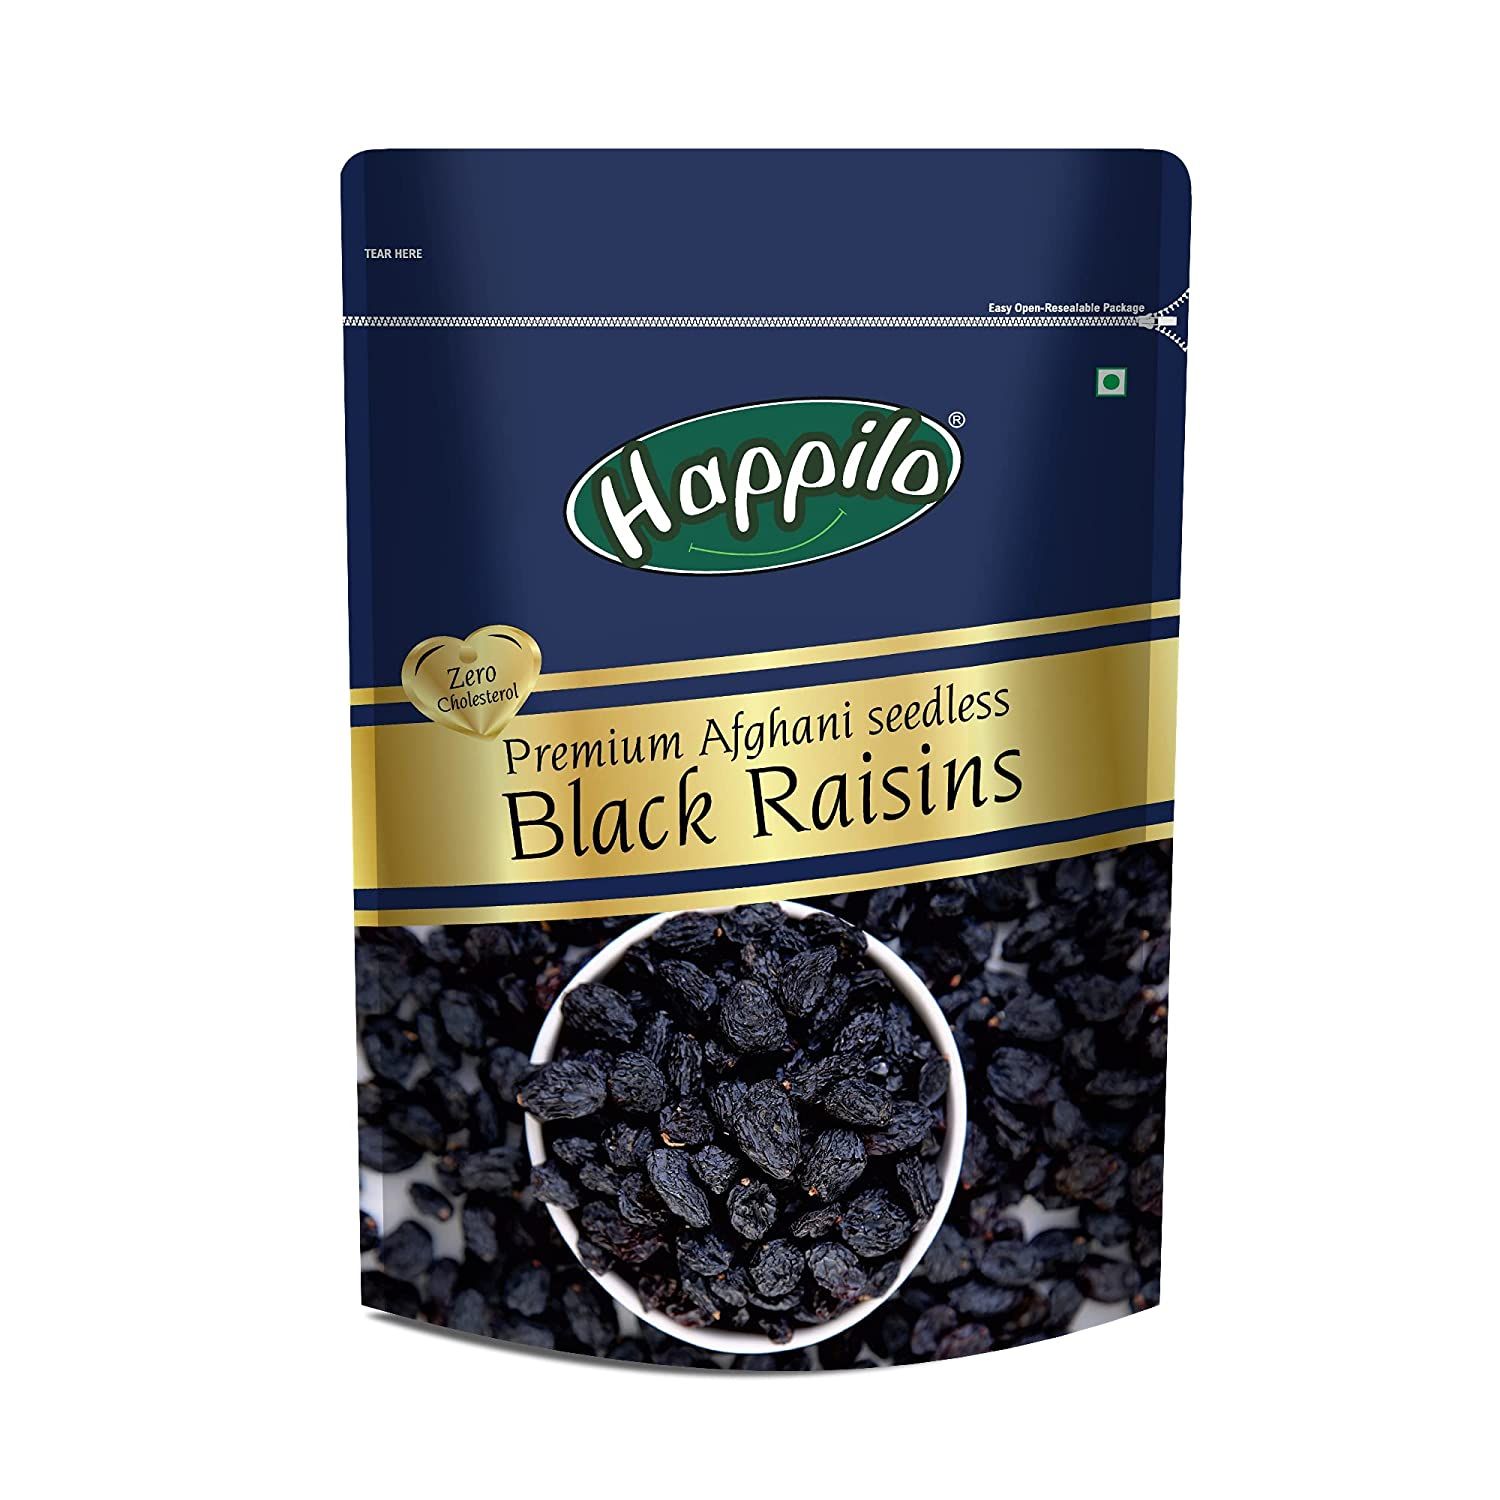 Happilo Premium Afghani Seedless Black Raisins Image